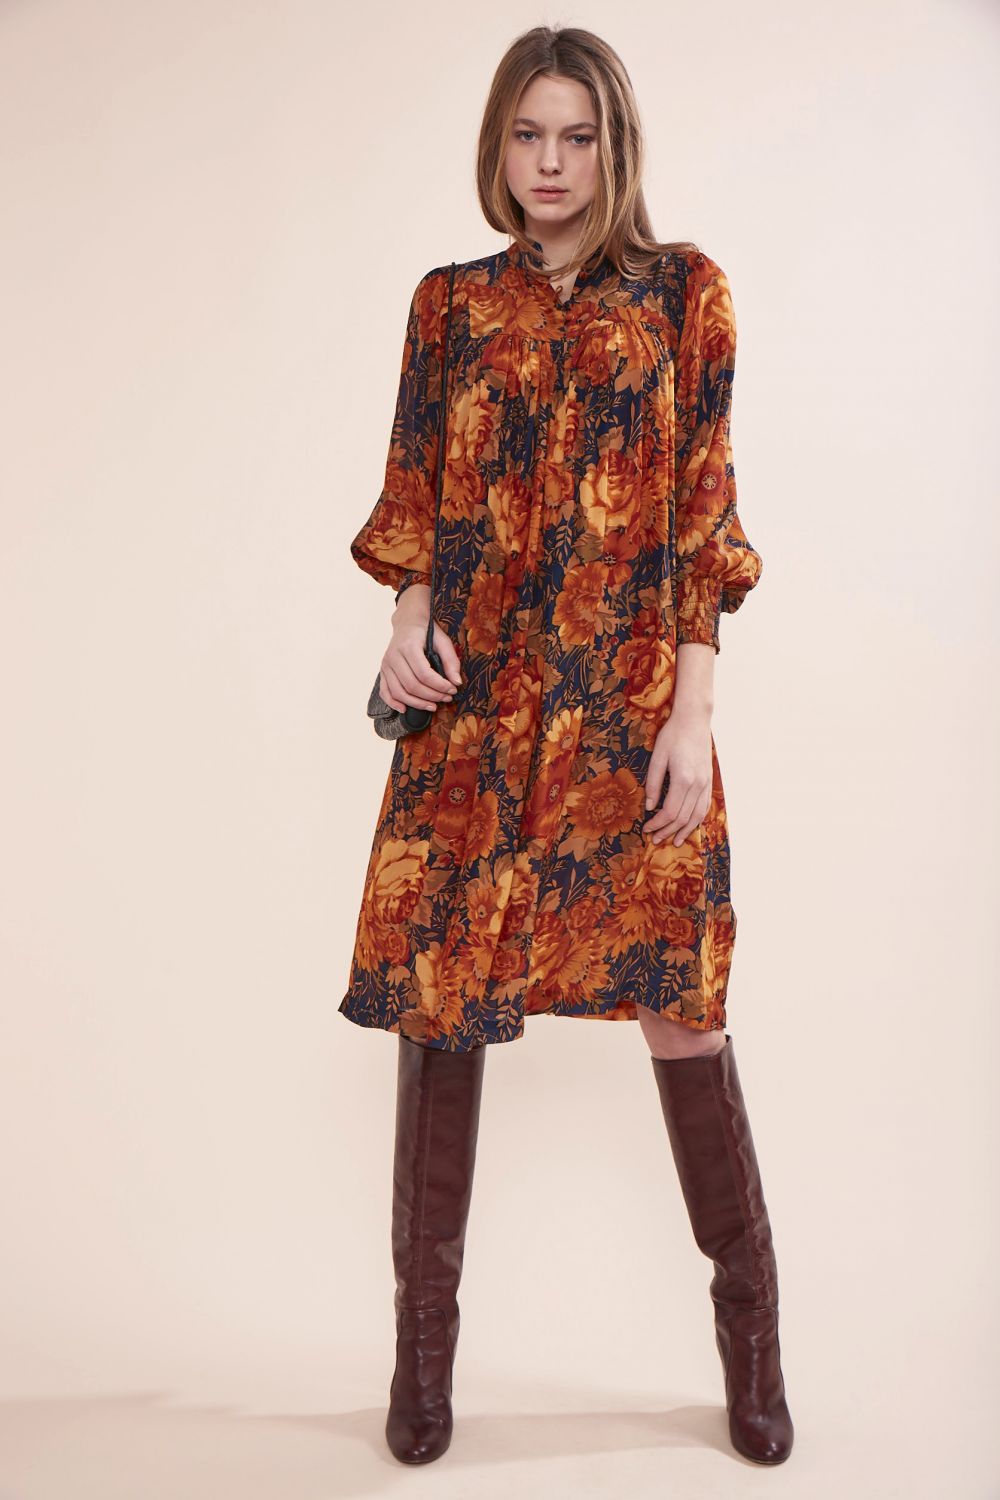 Robe Hiver : Shopping des robes de l'automne-hiver